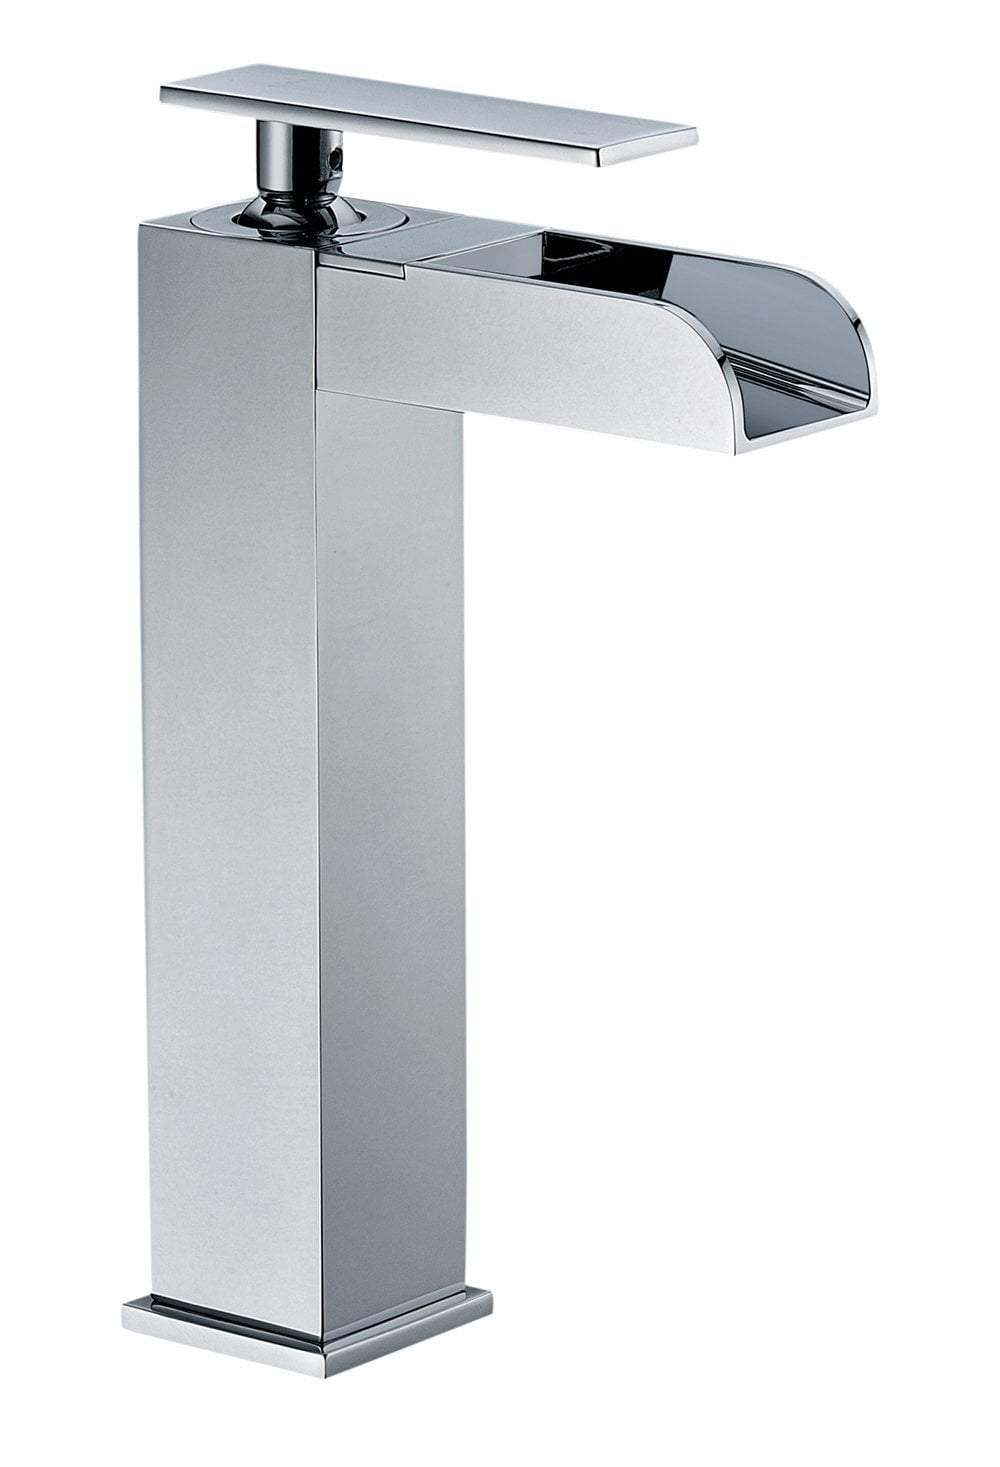 Polished Chrome Single Hole Tall Waterfall Bathroom Faucet